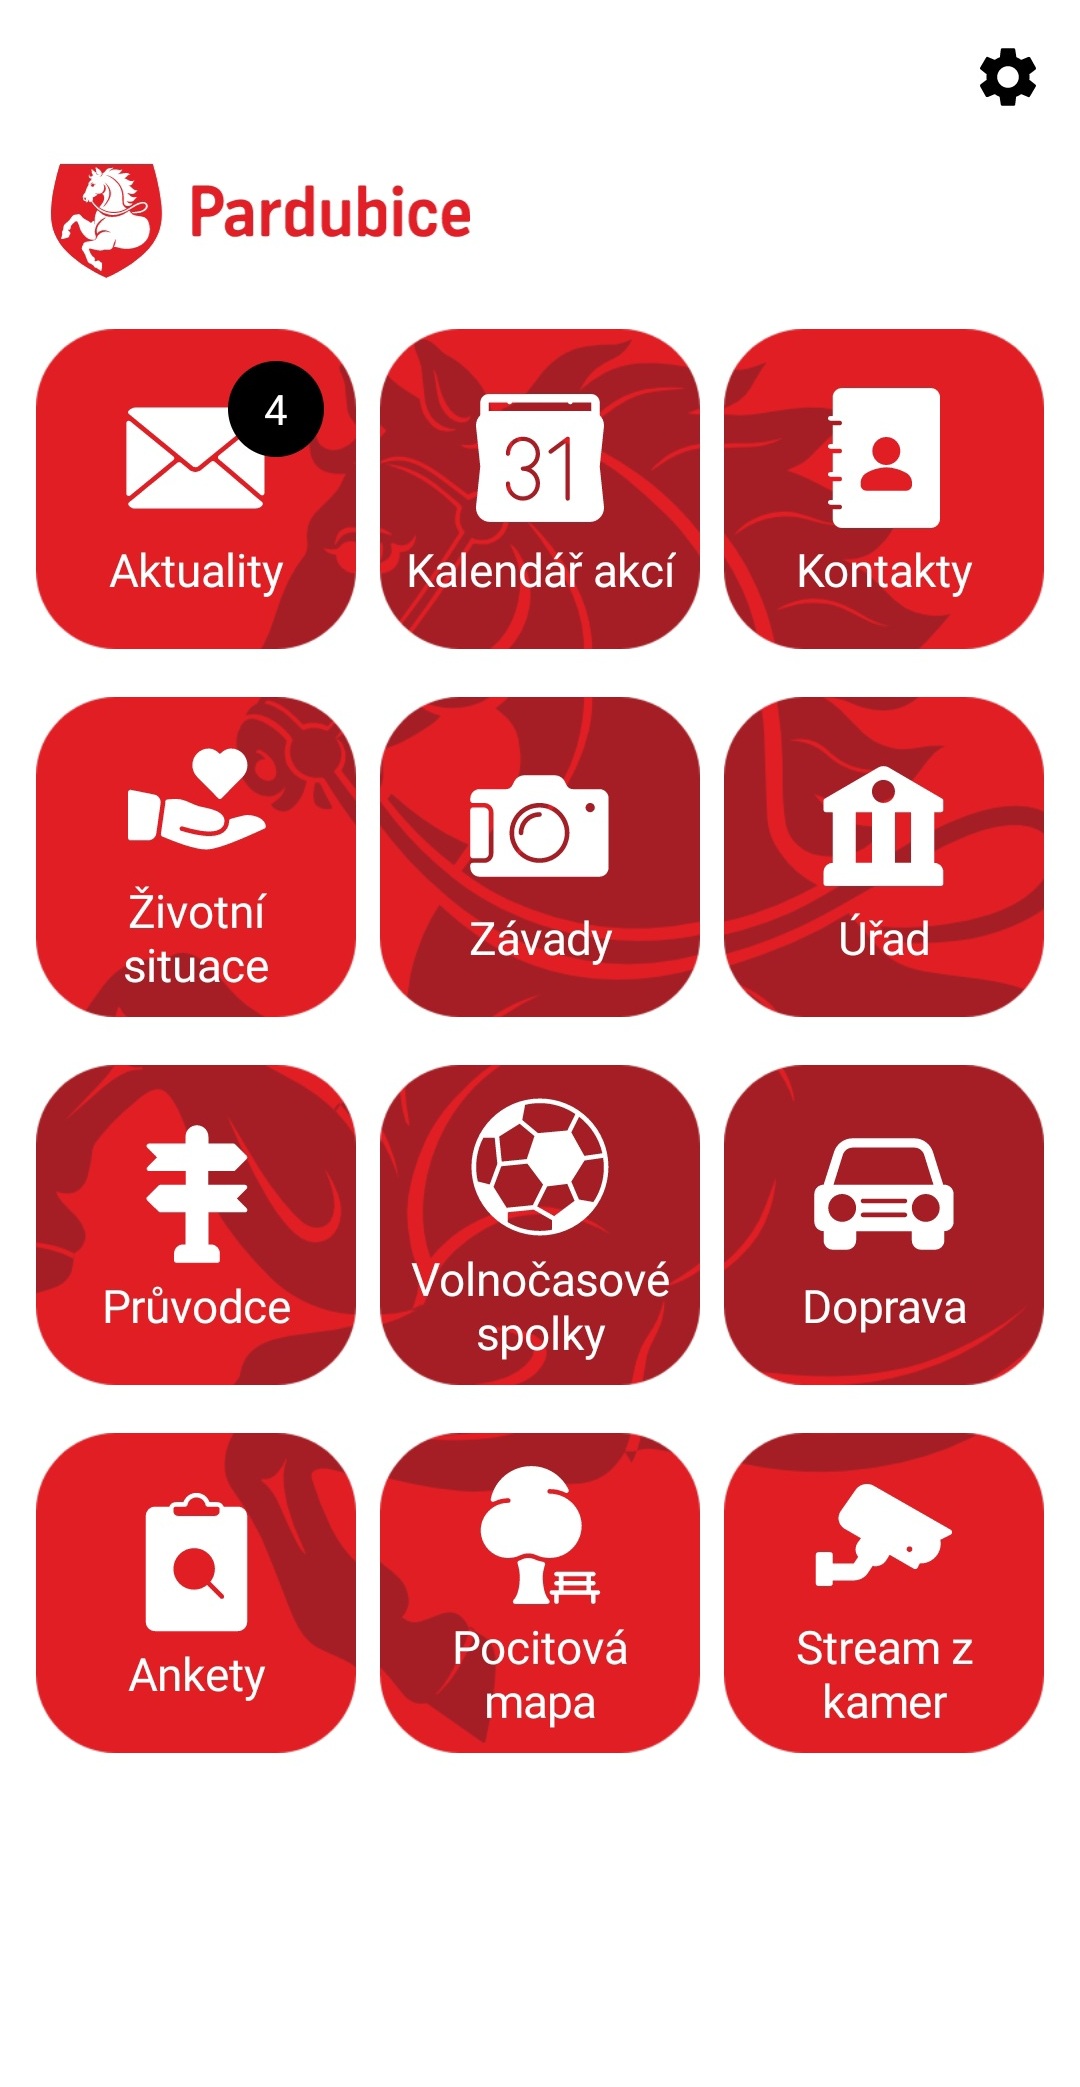 Pardubice spustily novou aplikaci